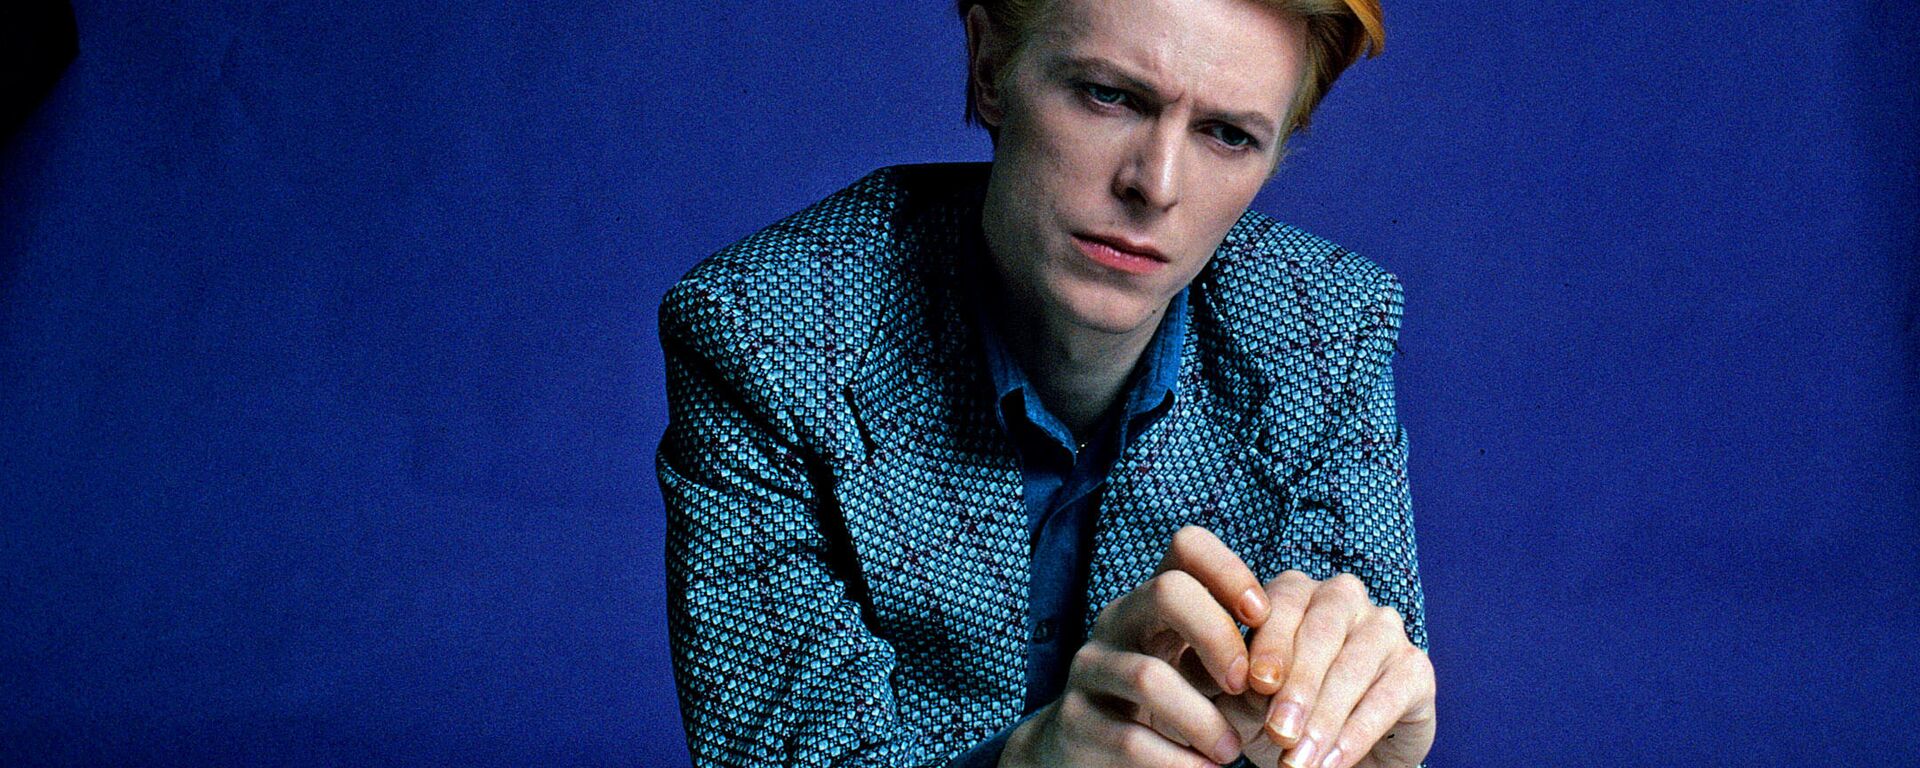 David Bowie, cantante y compositor británico.  - Sputnik Mundo, 1920, 08.01.2022